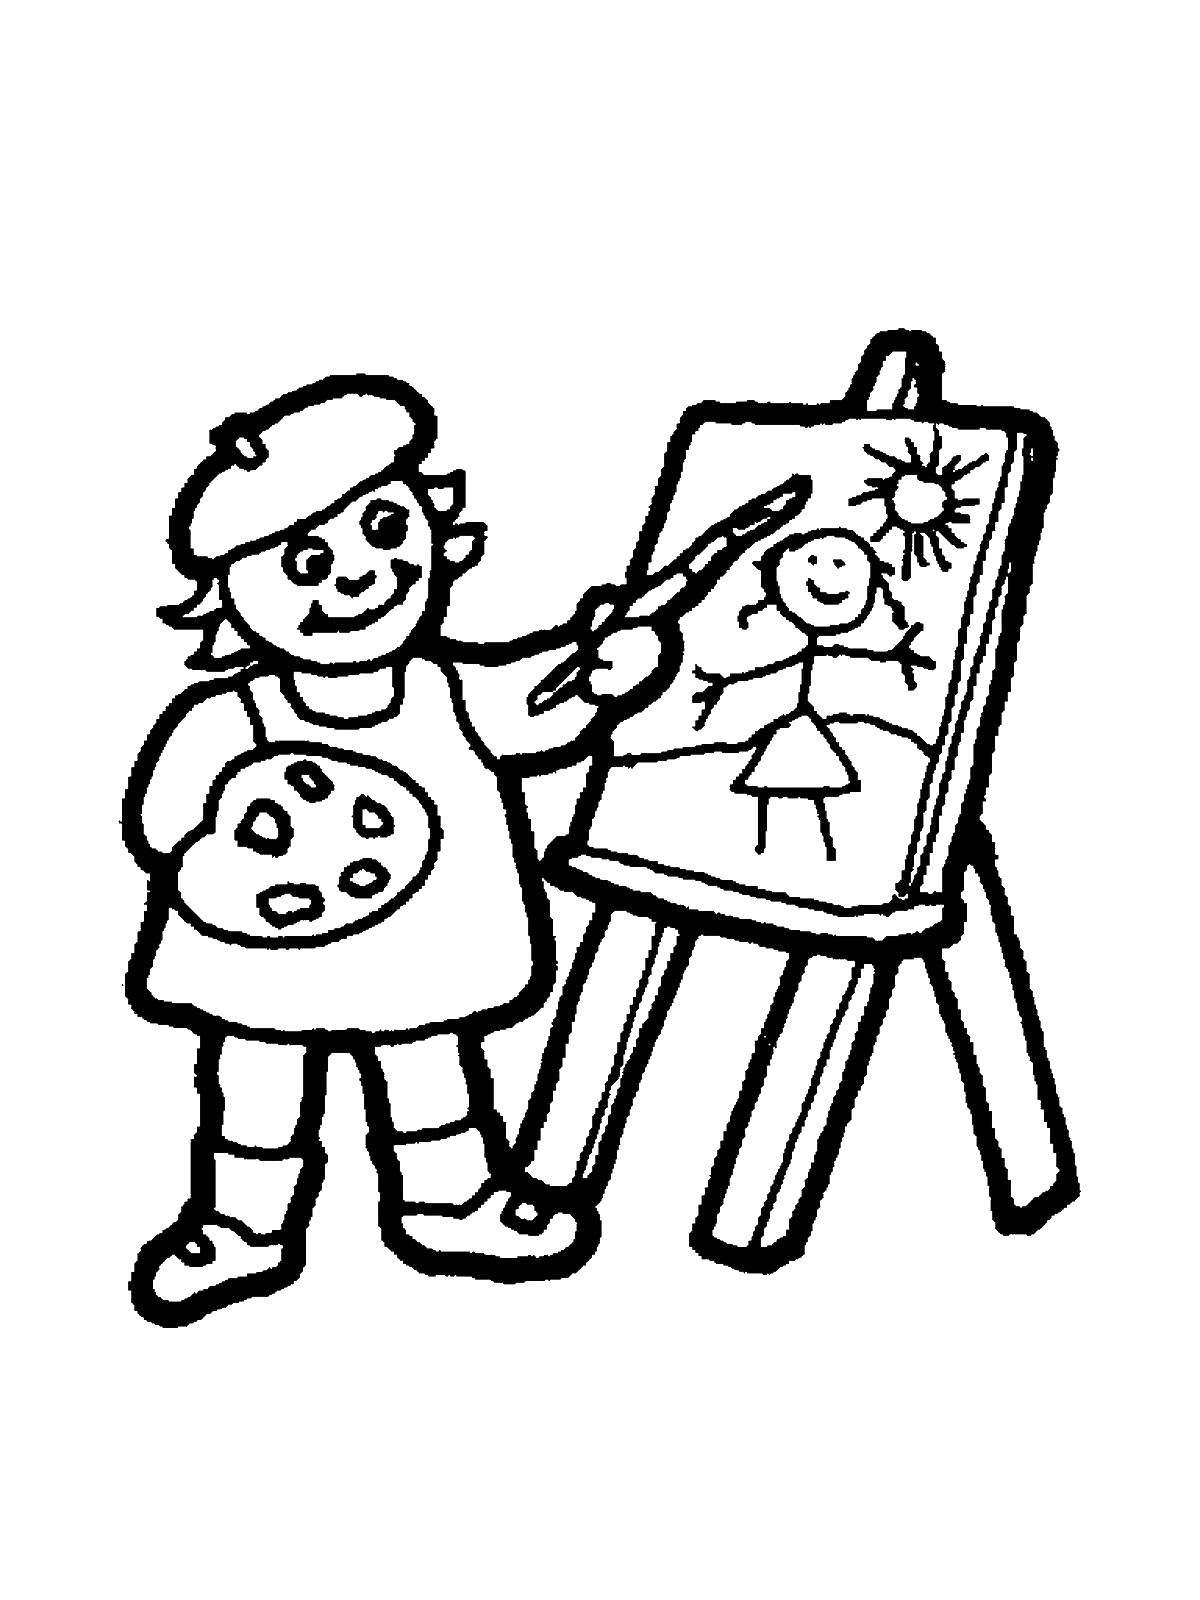 Раскраски Художник Раскраски Художник, раскраски человек рисует, раскраски про профессию художника для ребенка